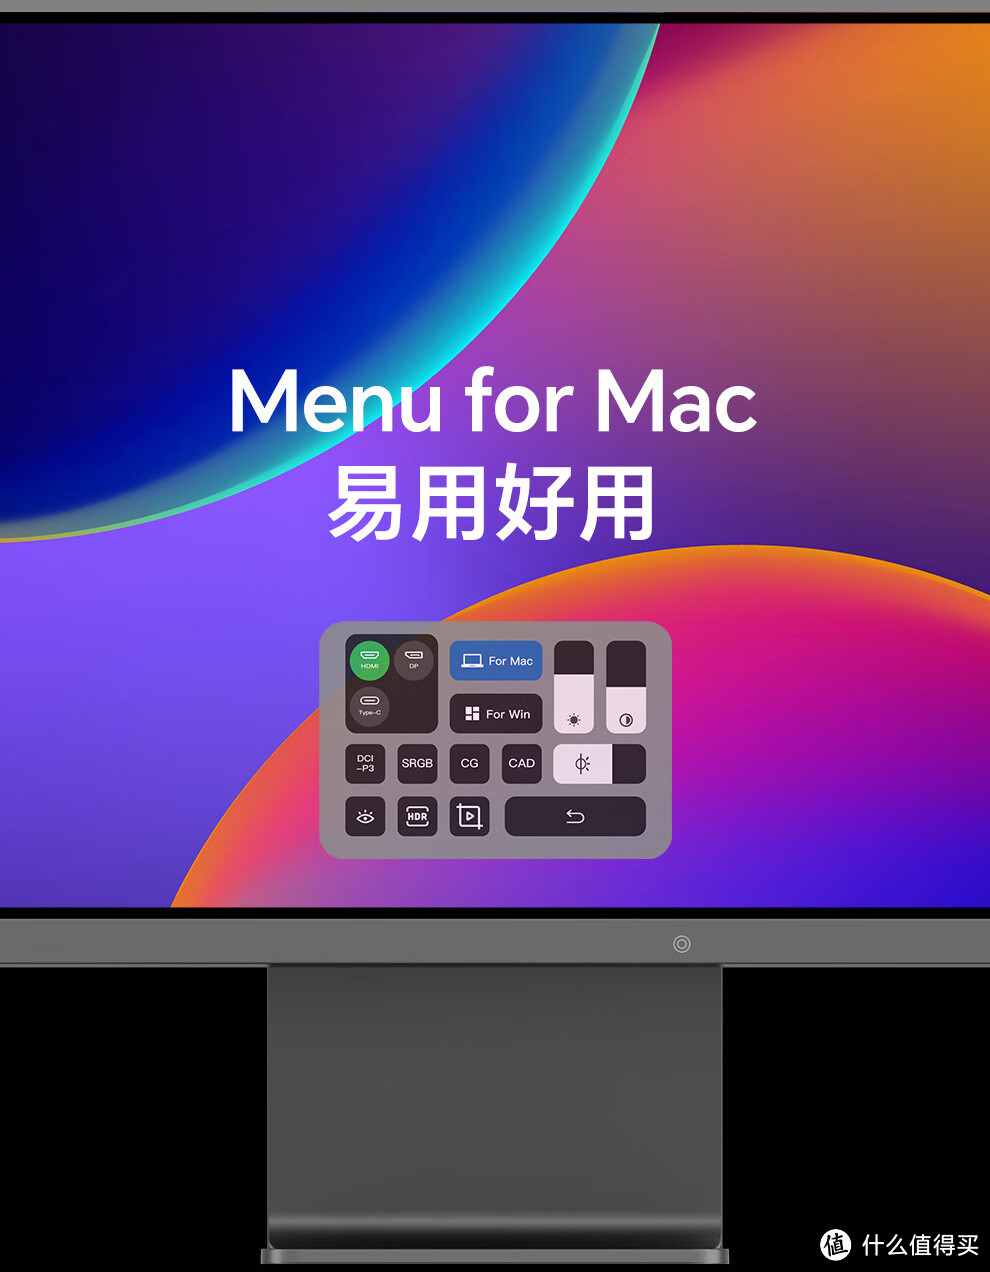 23.8英寸4K果粉屏RV100mini，没想到MacBook Air 2018也能搭配使用！系统已更新macOS Sonoma！